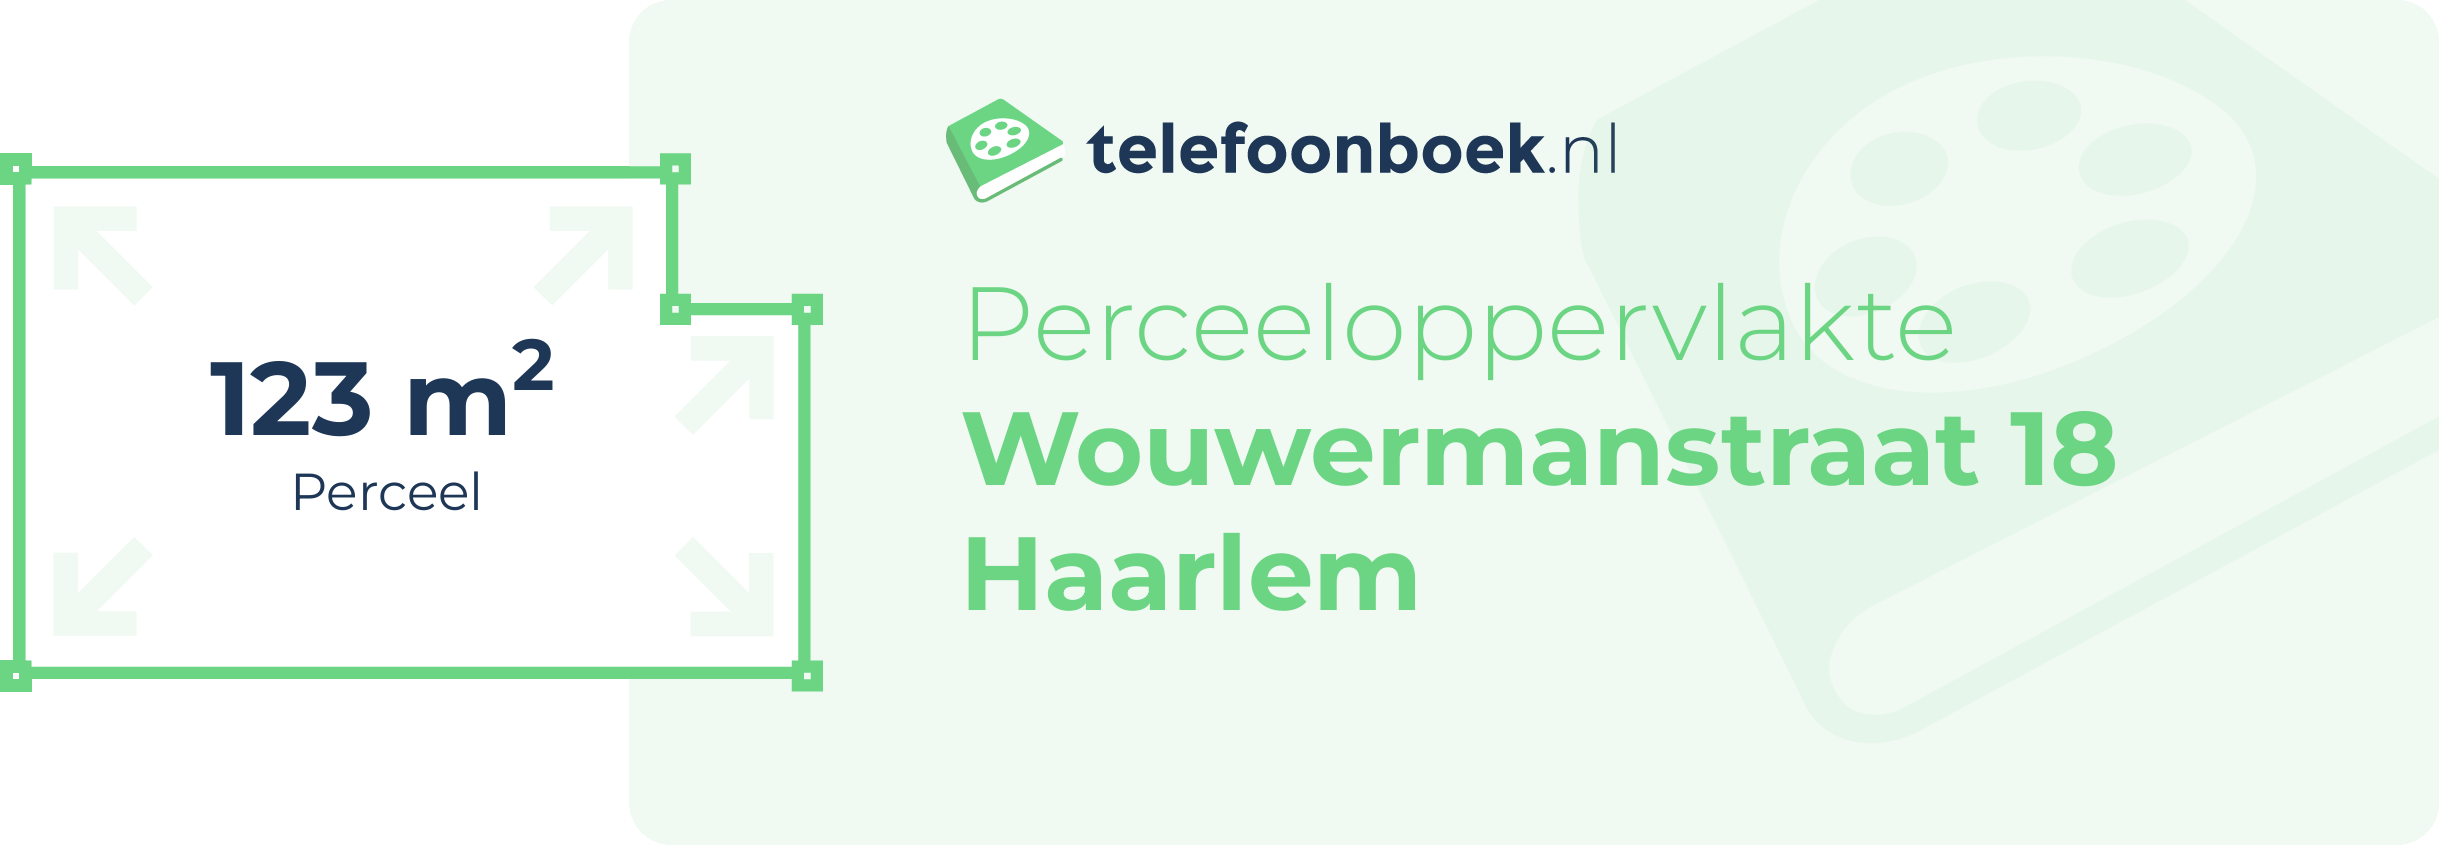 Perceeloppervlakte Wouwermanstraat 18 Haarlem